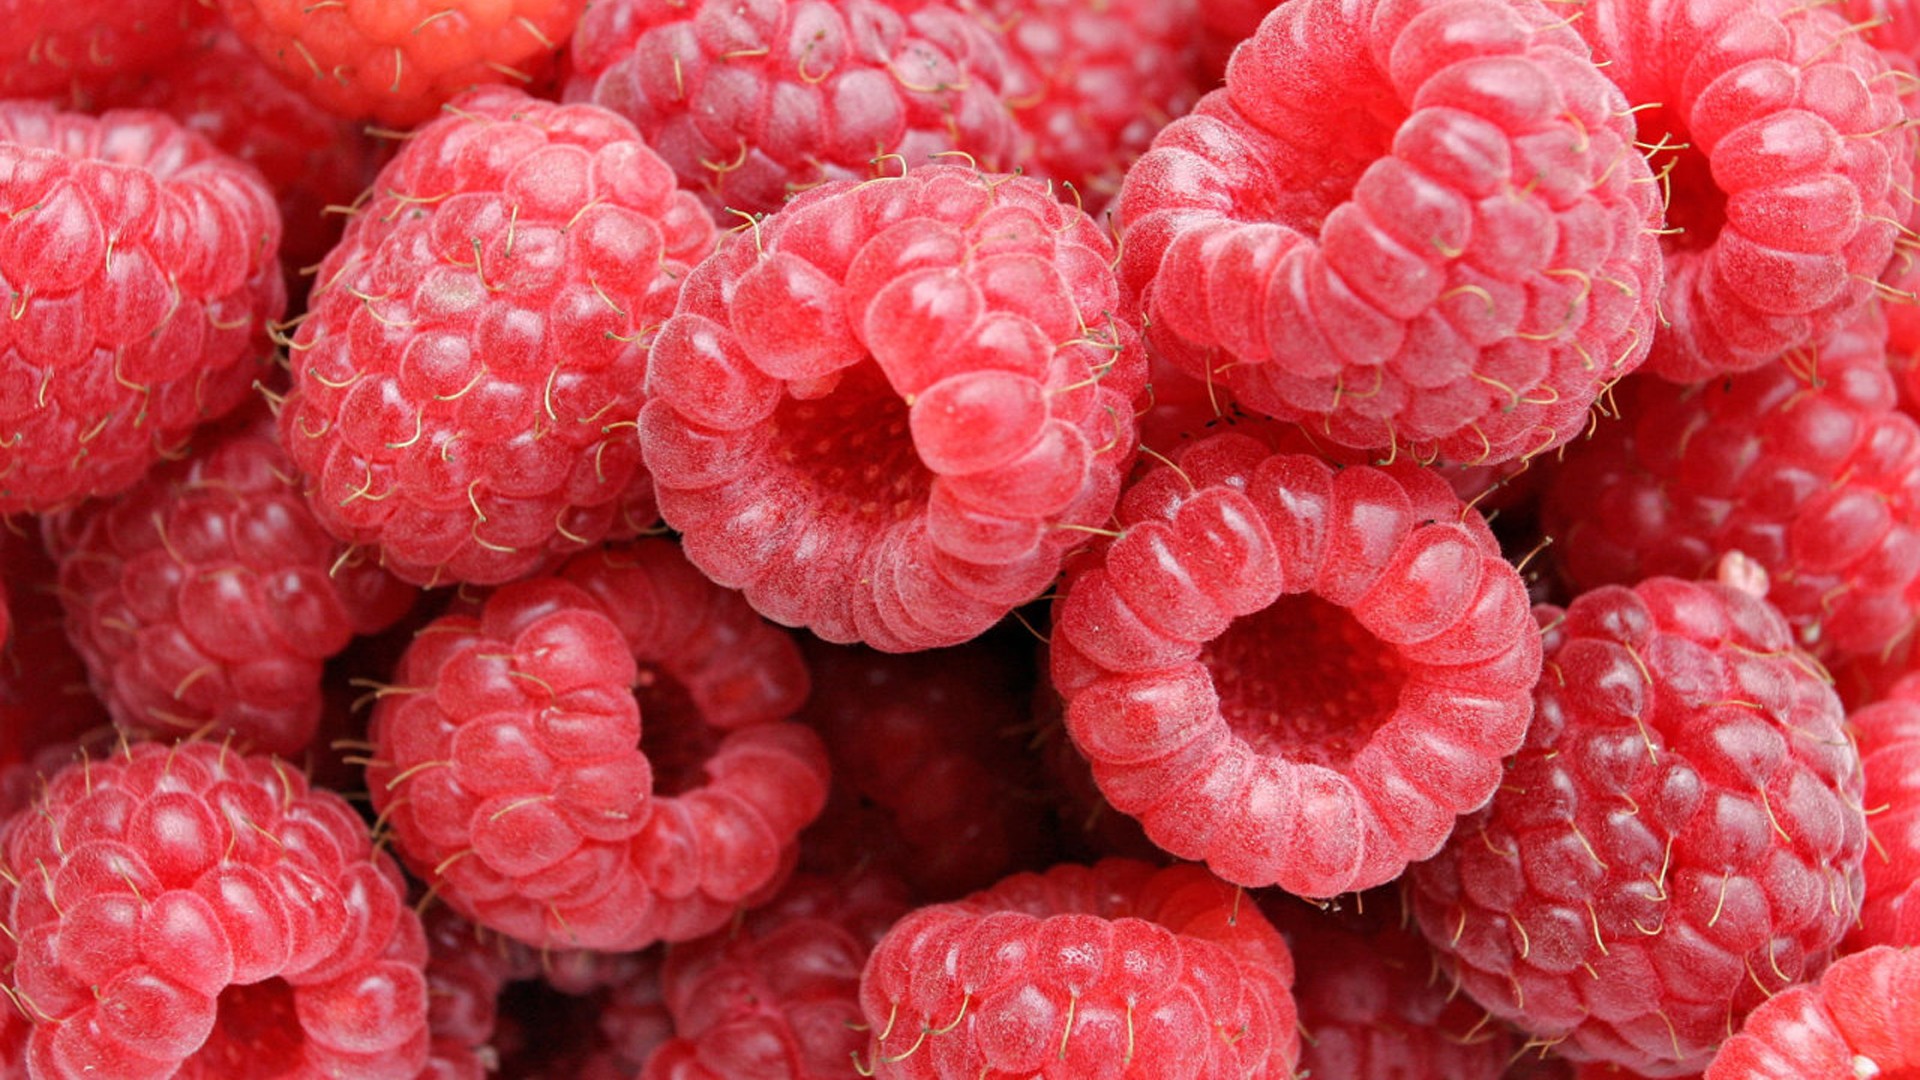 General 1920x1080 food raspberries fruit berries